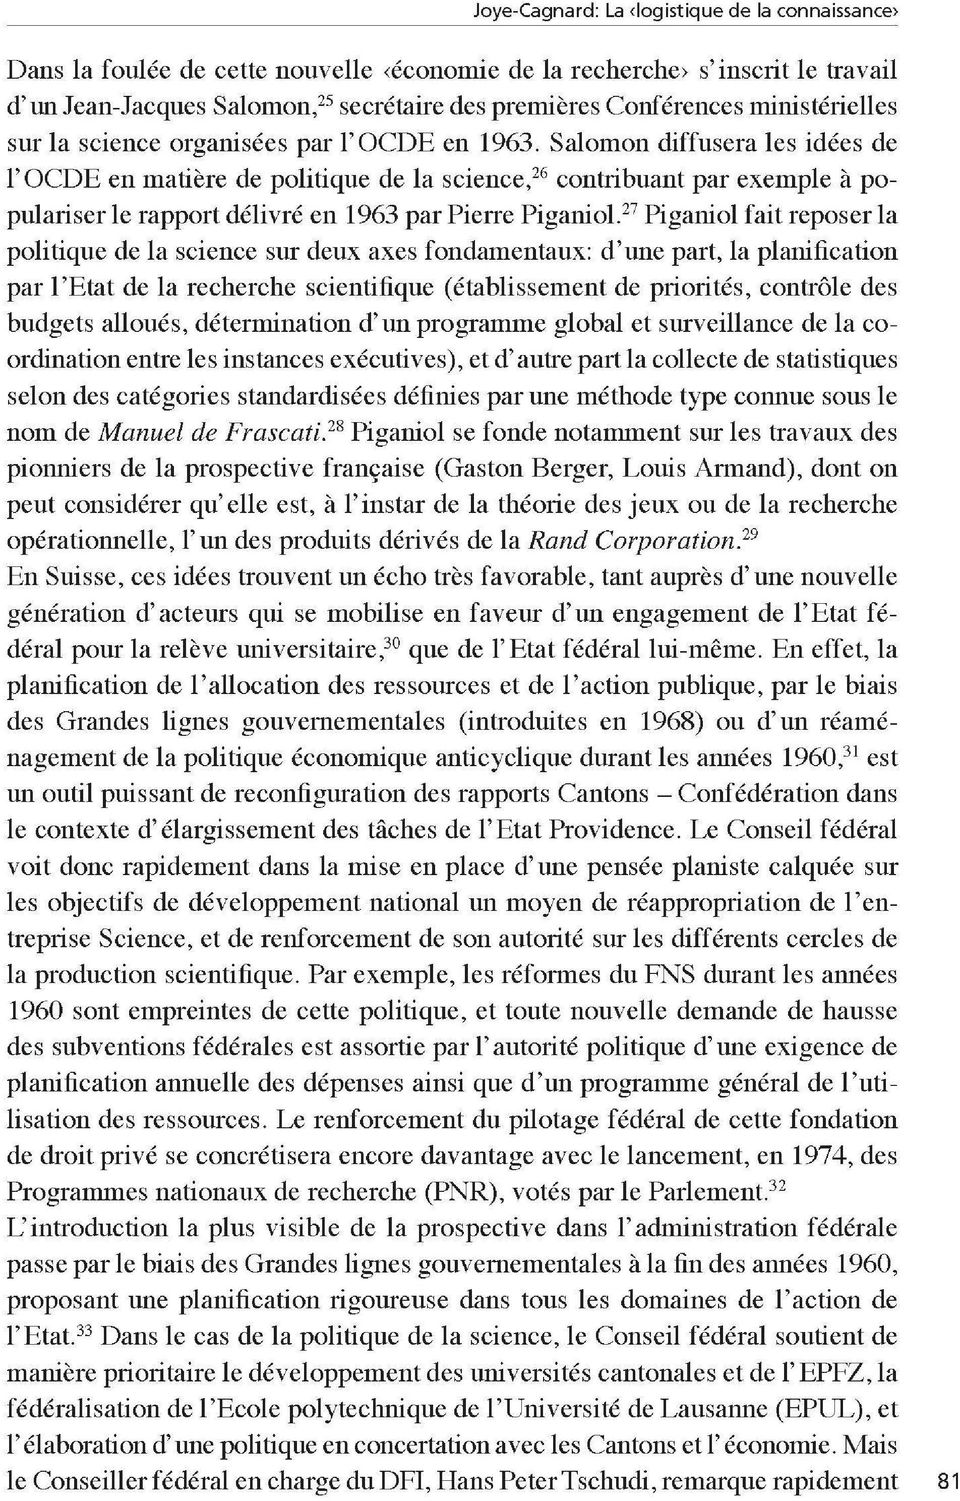 Salomon diffusera les idées de l OCDE en matière de politique de la science, 26 contribuant par exemple à po pulariser le rapport délivré en 1963 par Pierre Piganiol.